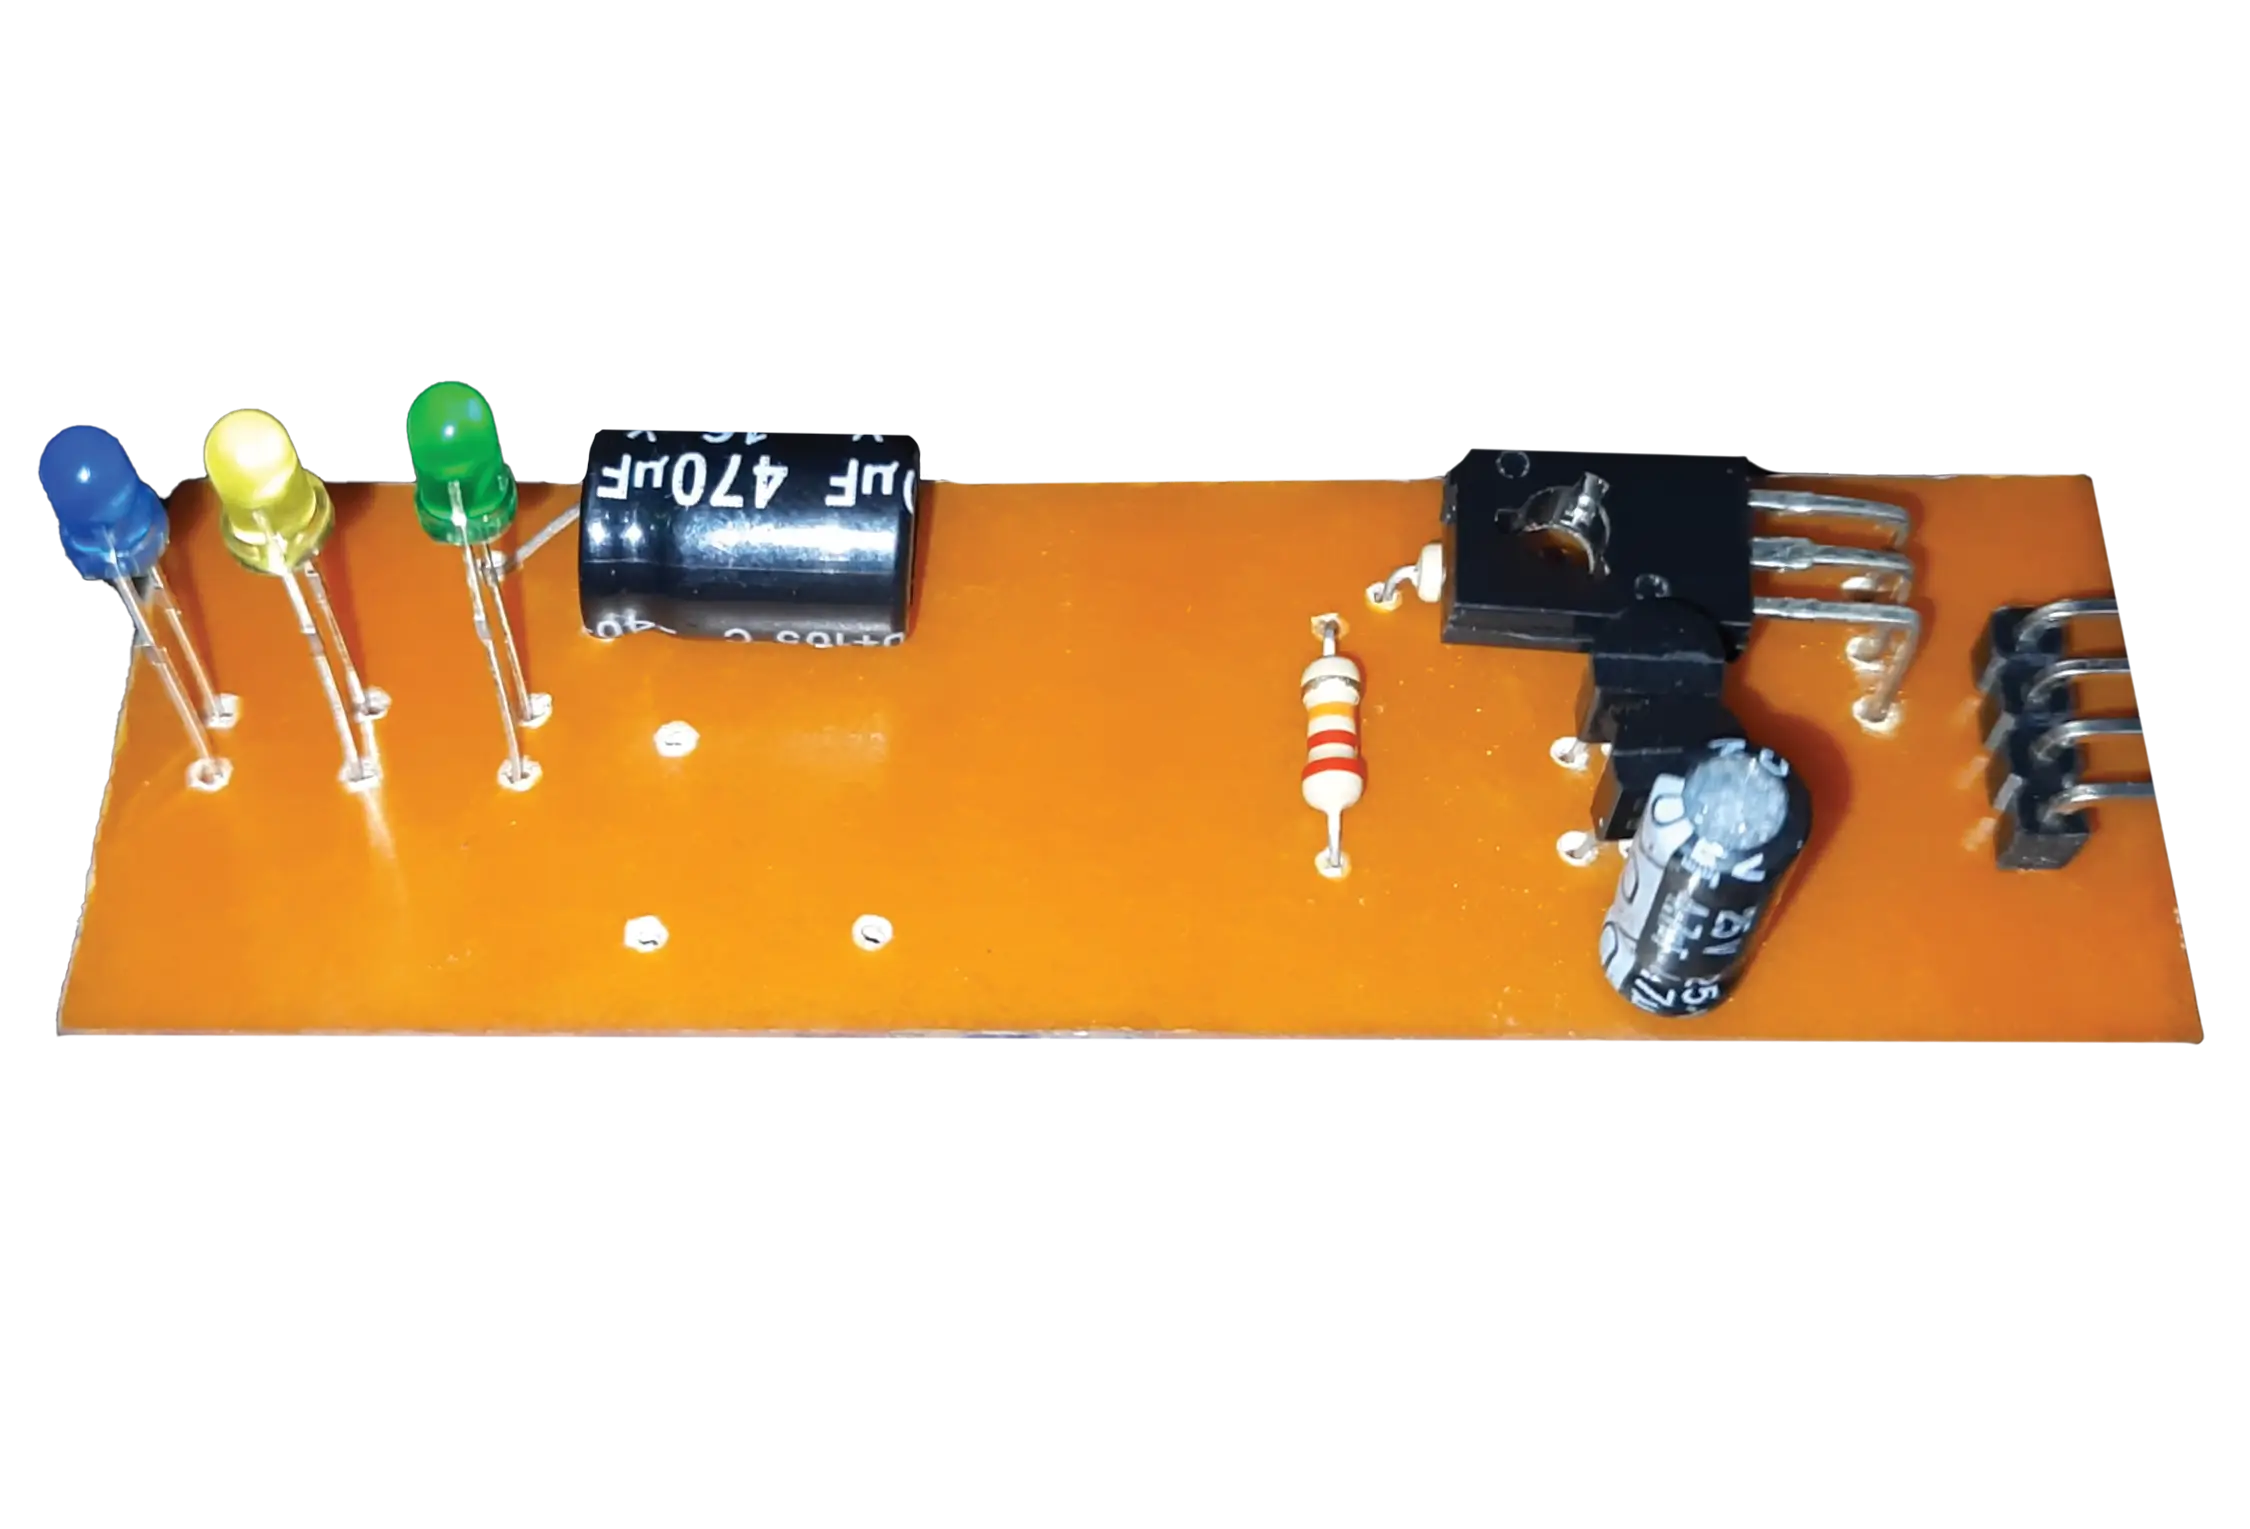 سایت الکترومد | دانلود پروژه ردیاب آهن مدل pin pointer + مدار و PCB